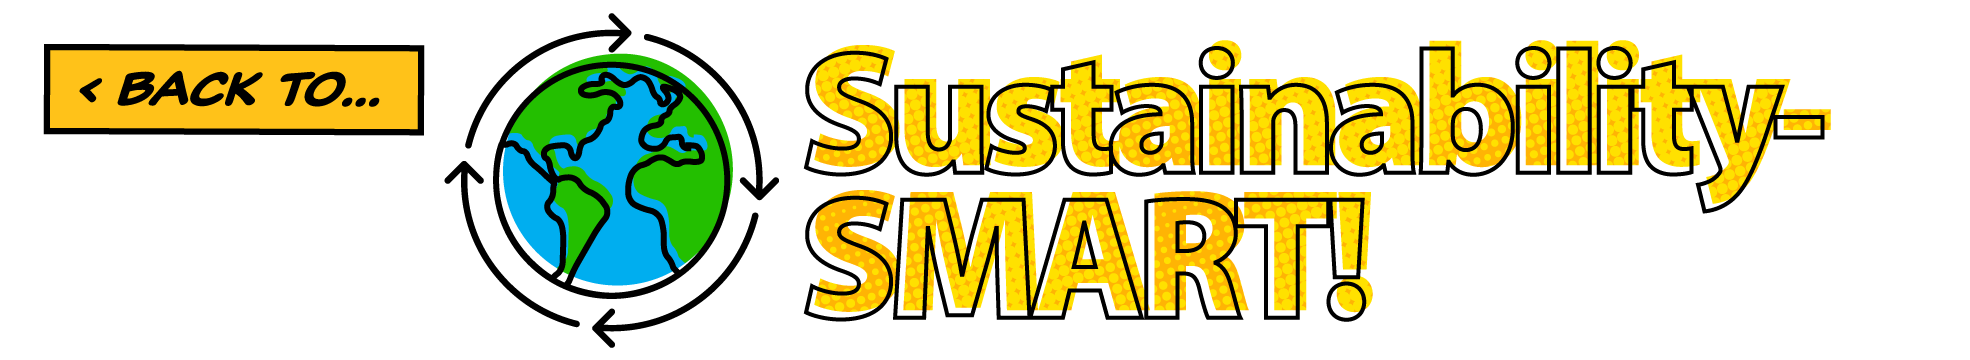 Back to… Sustainability-SMART!